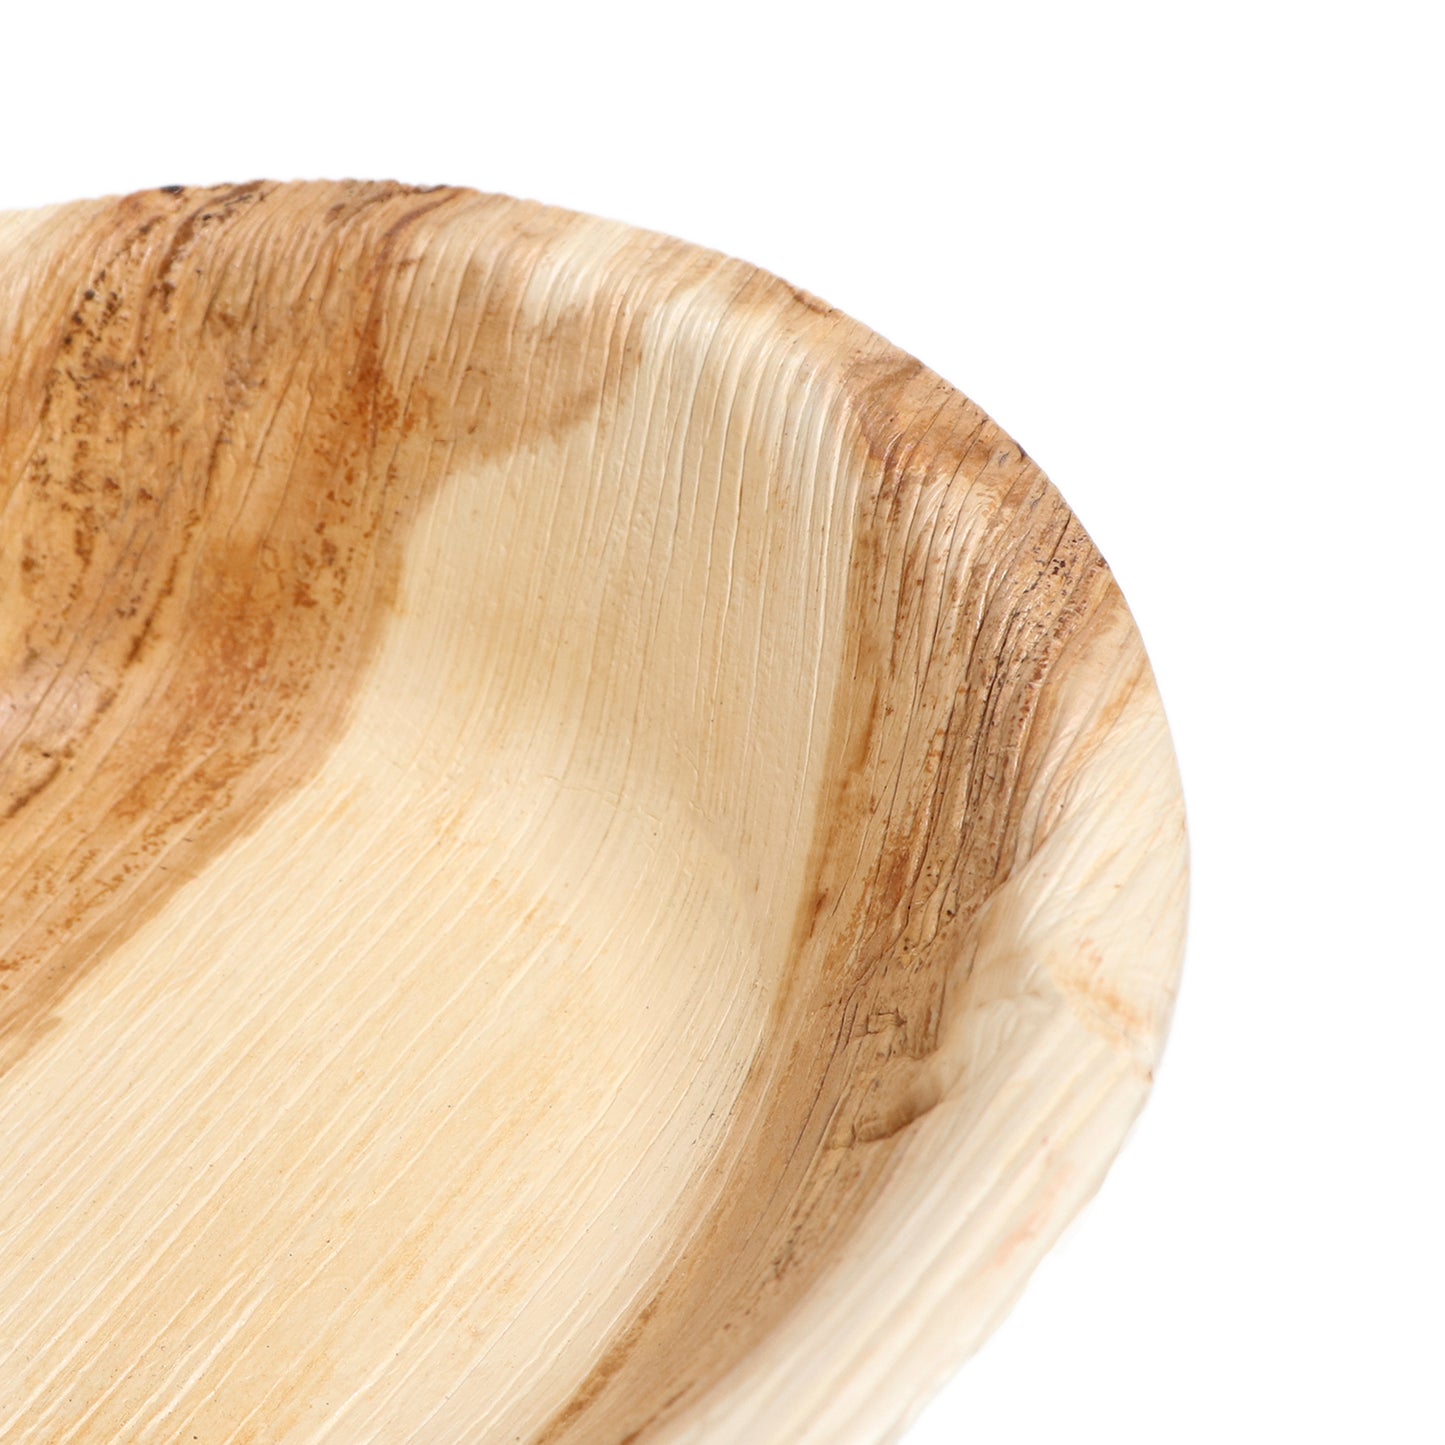 5" / 12.7 cm Round Palm Leaf Bowls - Eco Leaf Products